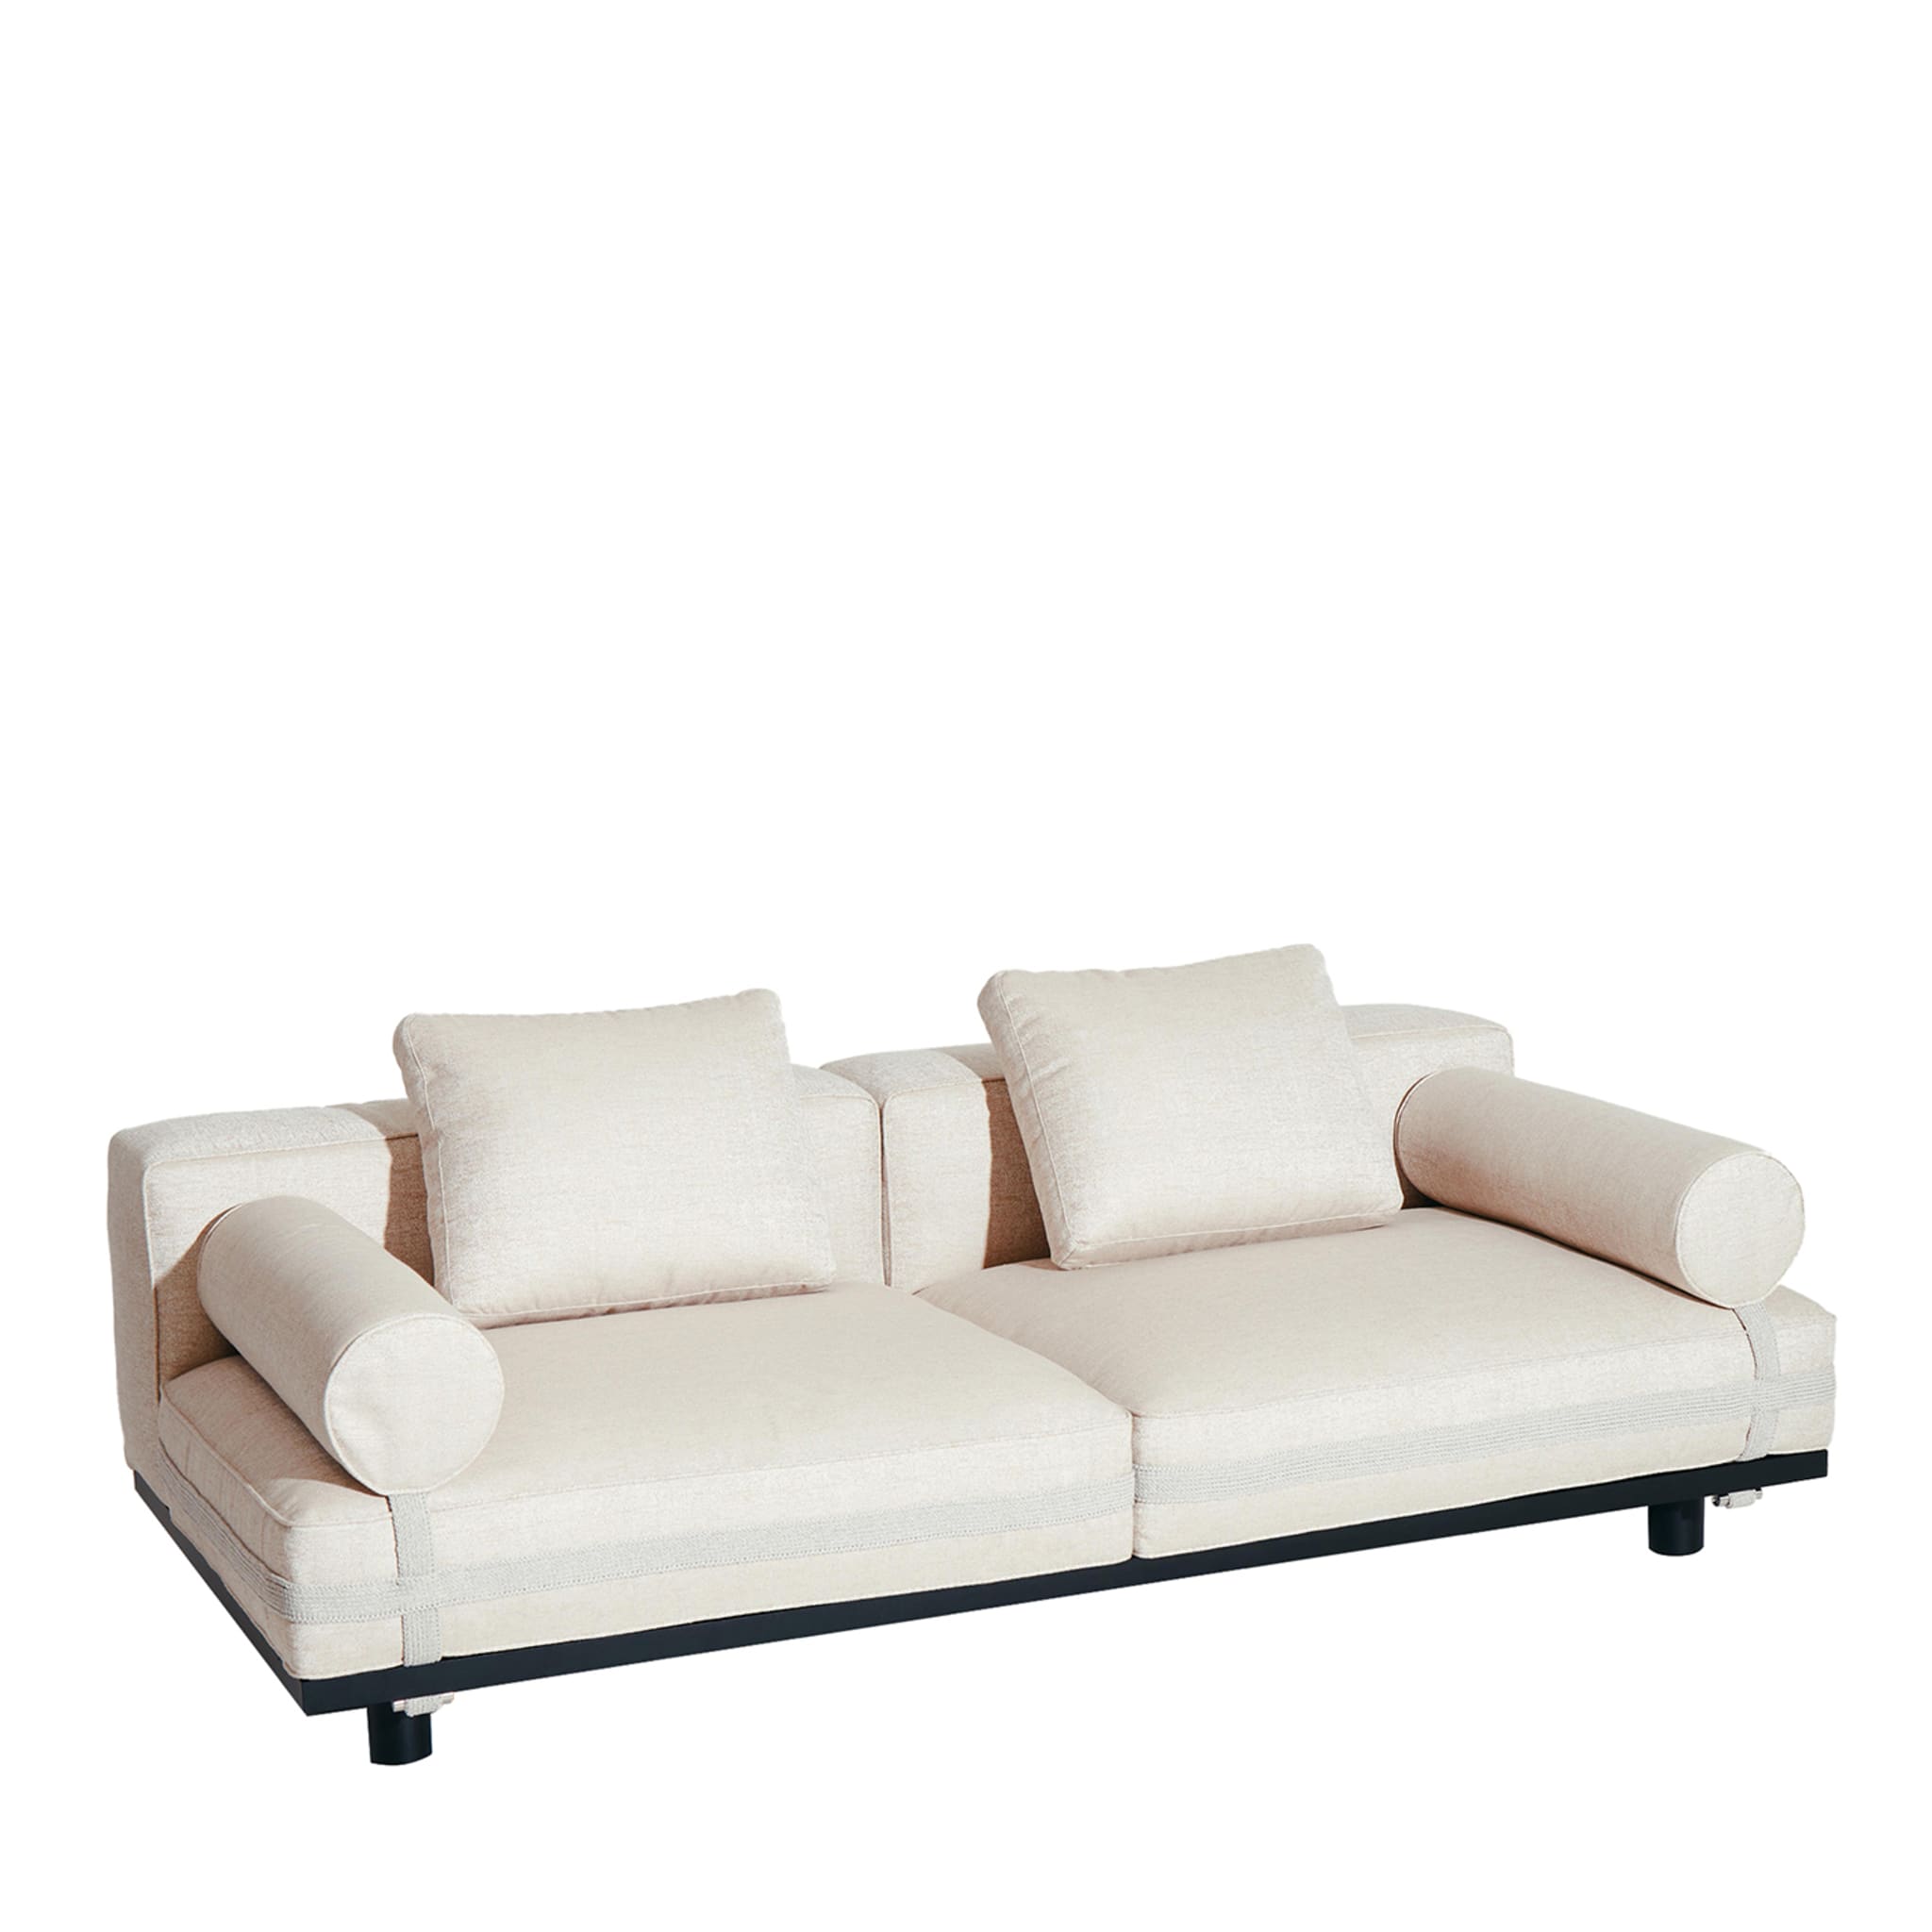 Saint Remy White 2-Seater Sofa #2 by Luca Nichetto - Vue principale